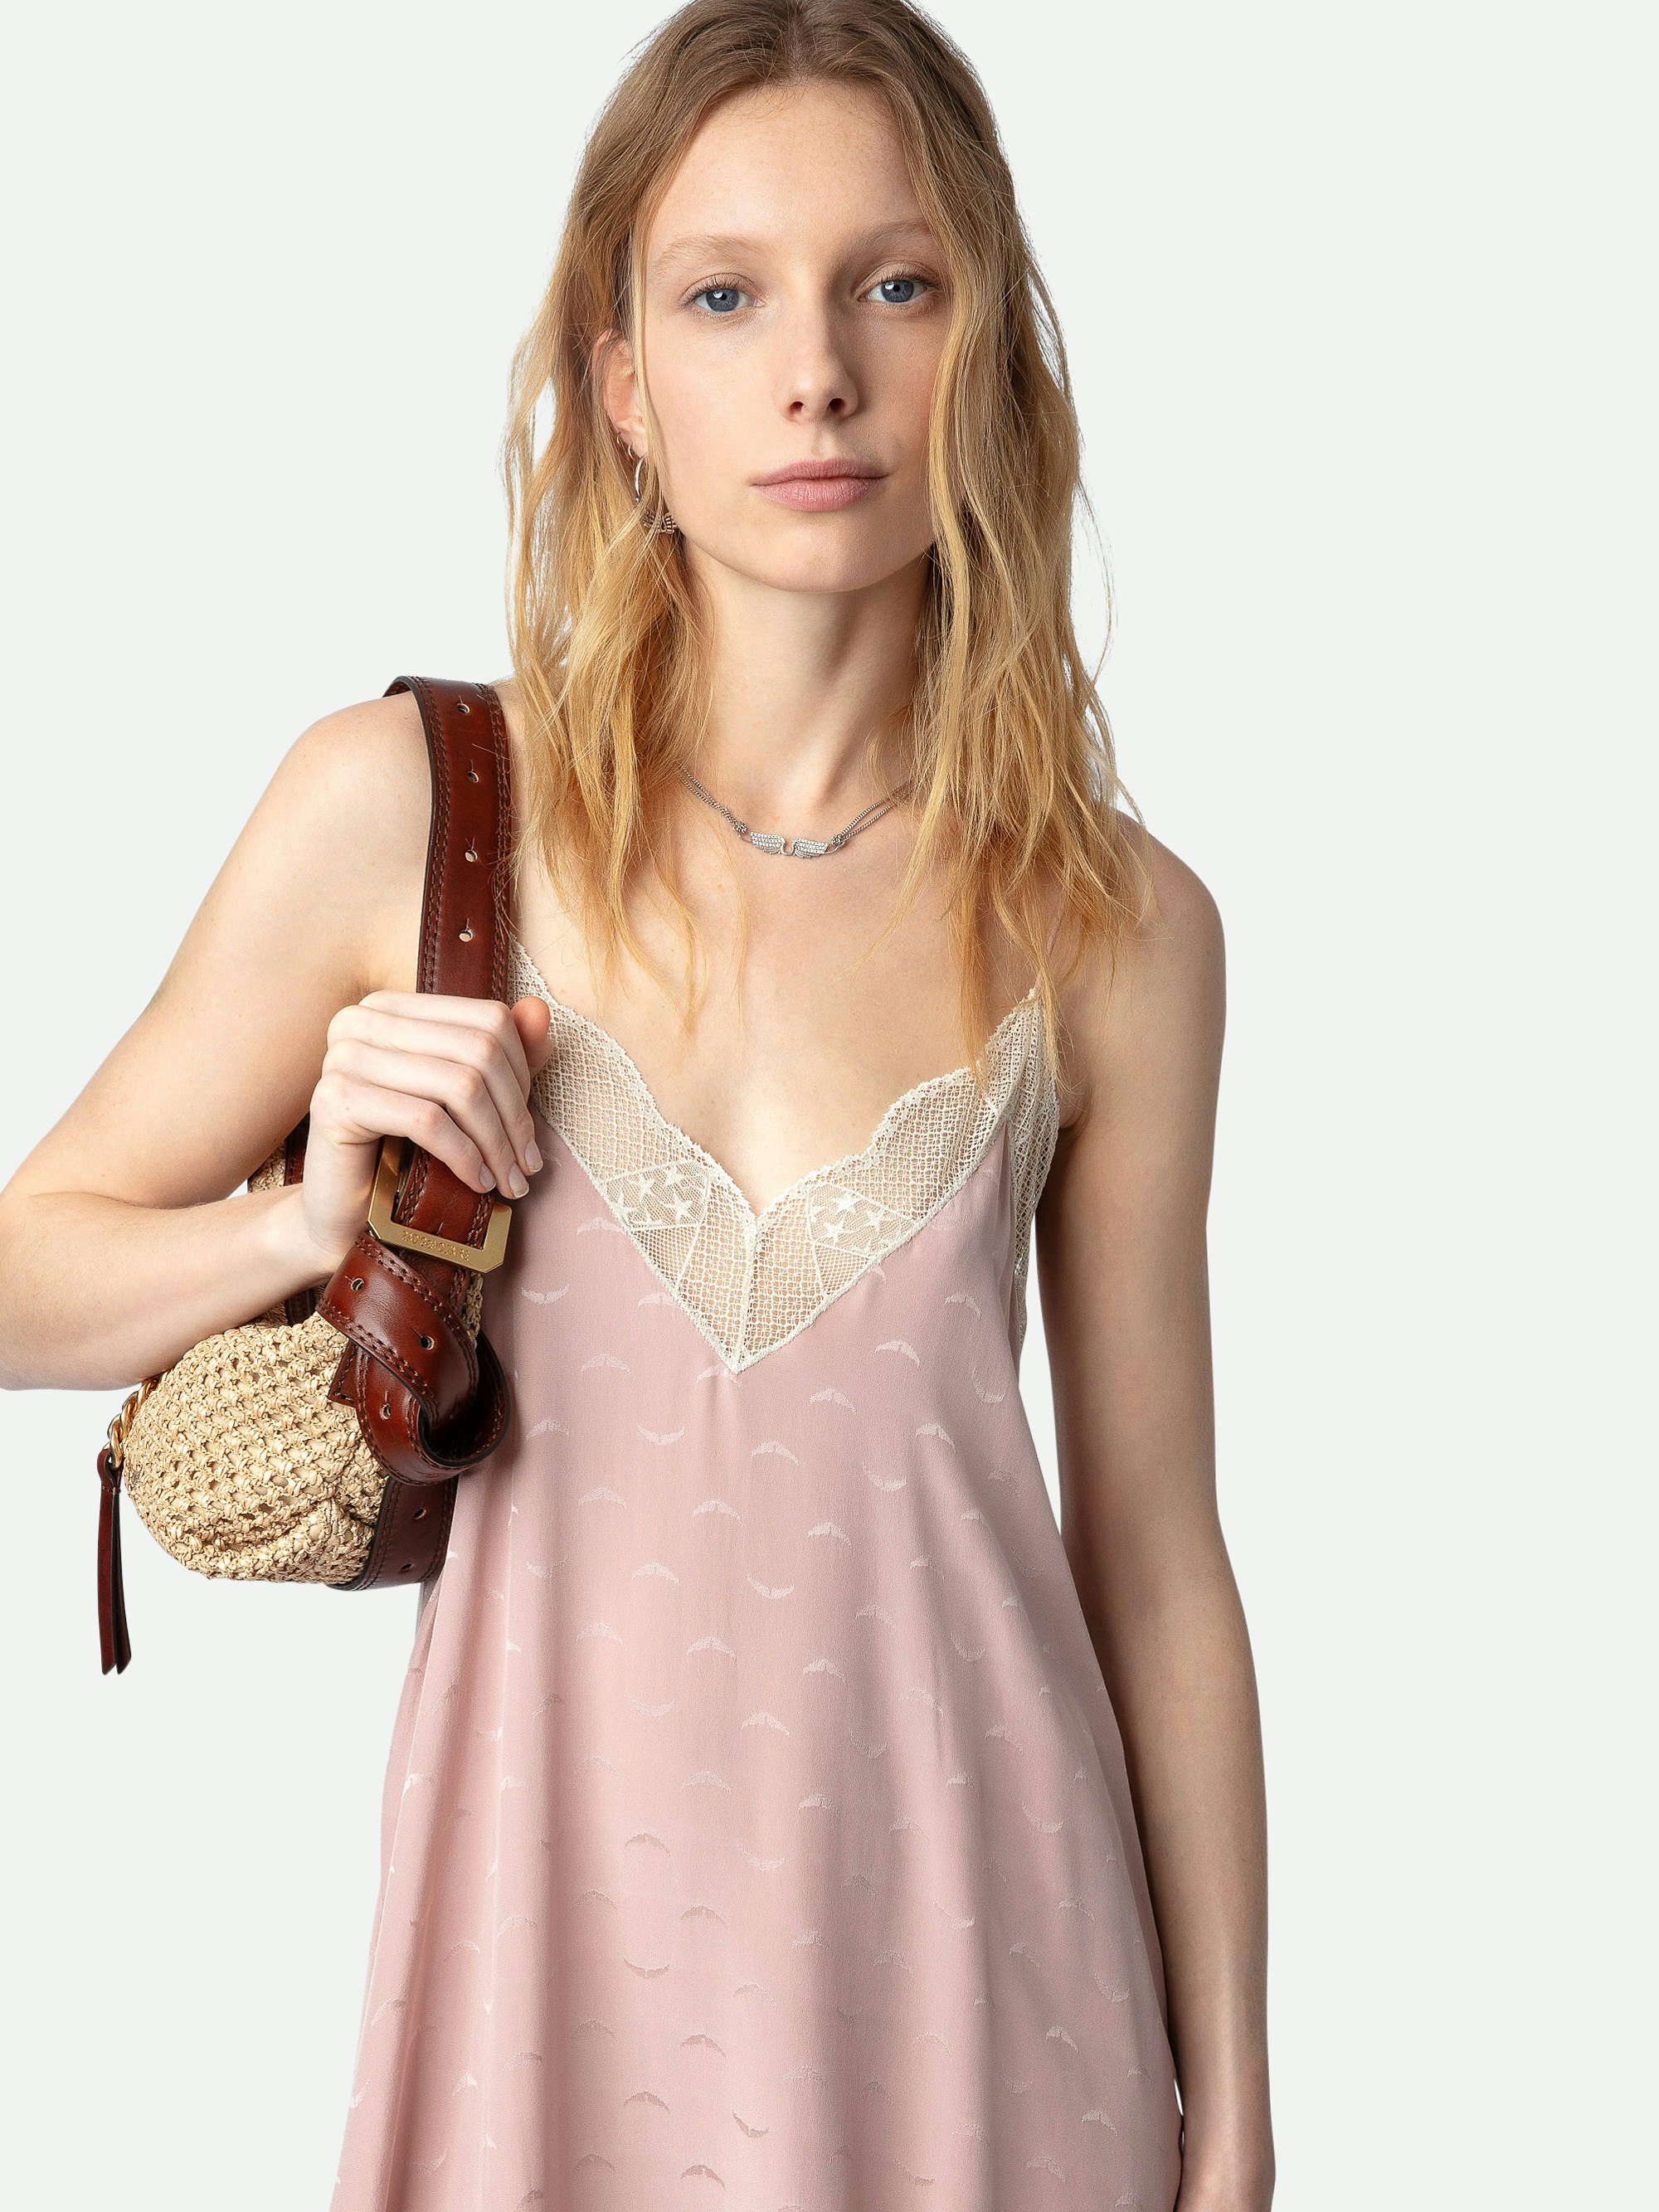 Kleid Risty Seide Jacquard - Langes, rosafarbenes Seidenkleid im Lingerie-Stil mit Jacquard-Flügeln, schmalen Trägern und Spitzendekolleté.